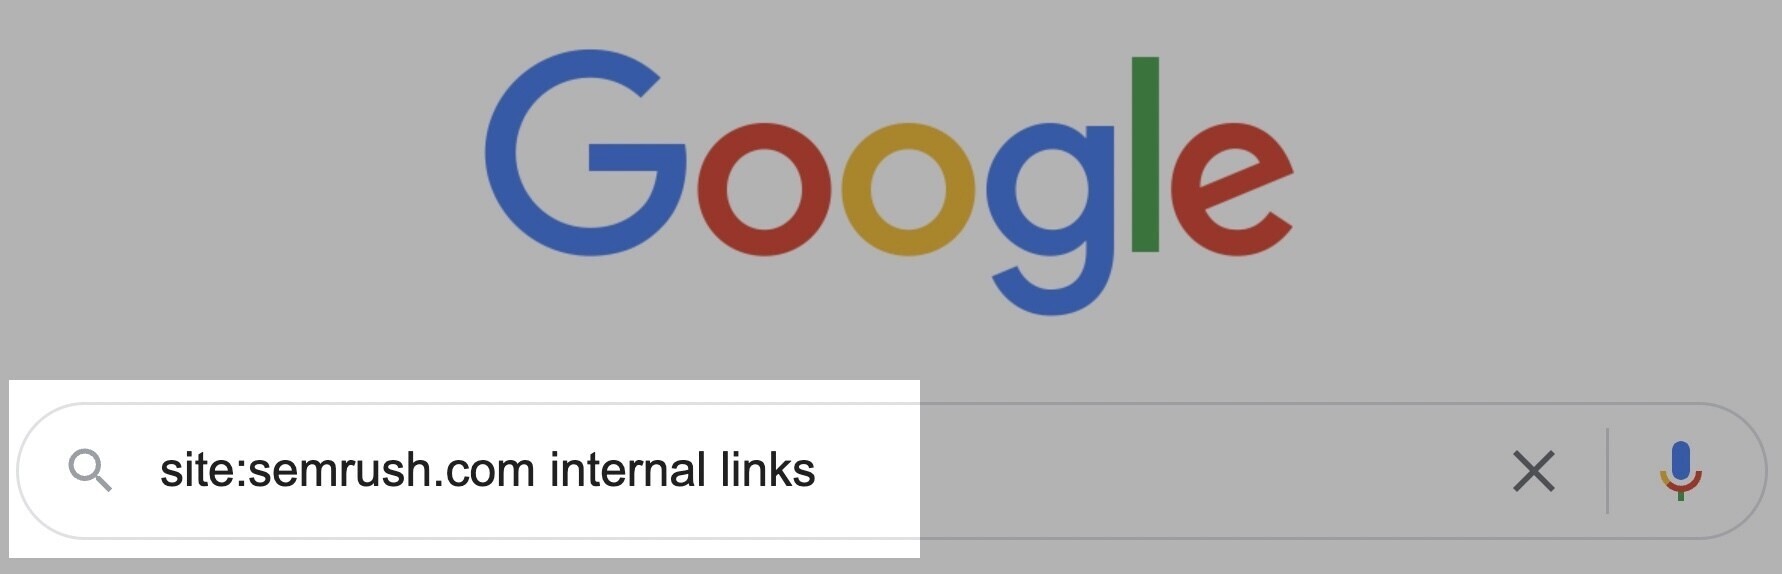 tìm kiếm Google cho các trang Semrush về liên kết nội bộ